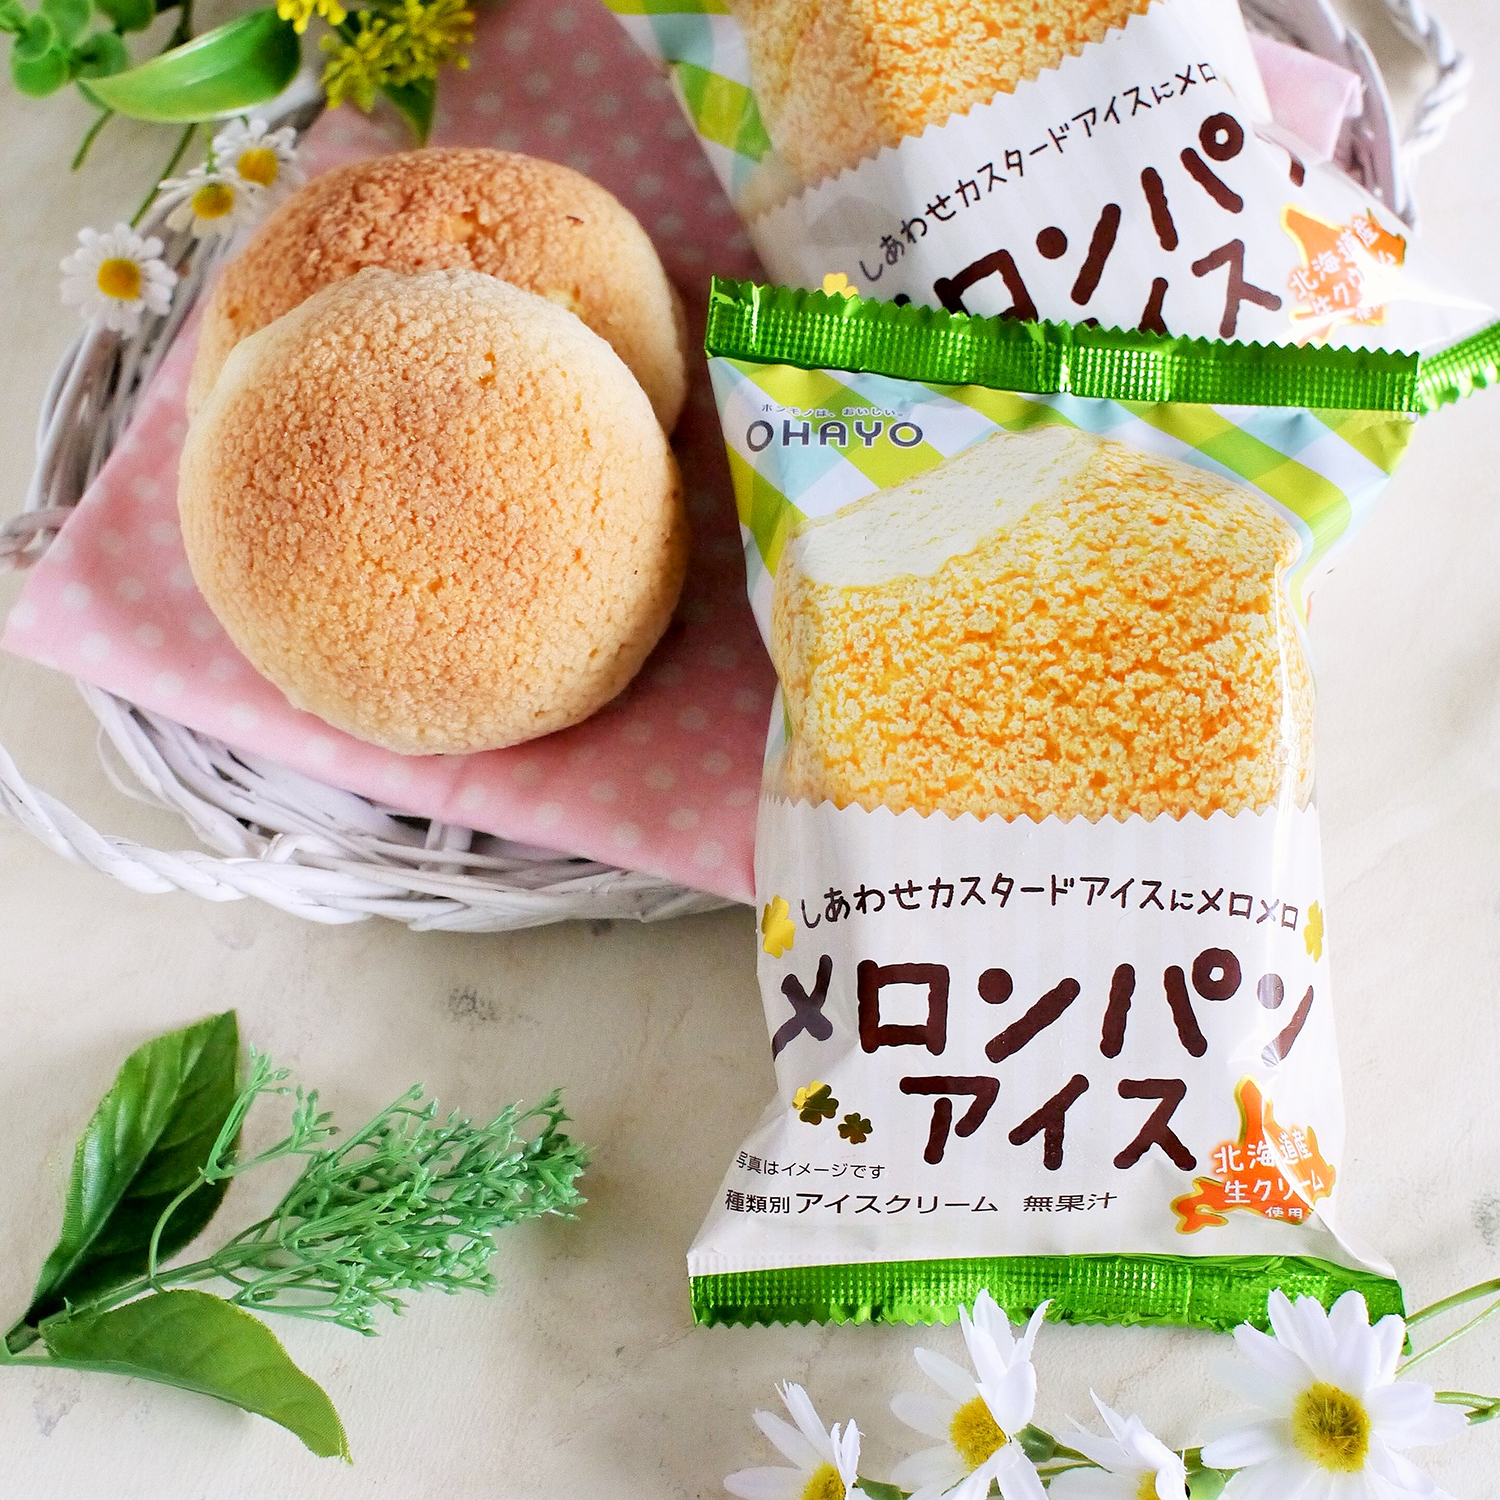 北海道産生クリーム使用でさらに濃厚 後味すっきりなおいしさに ファミマ限定 メロンパンアイス 発売 Emo Miu エモミュー